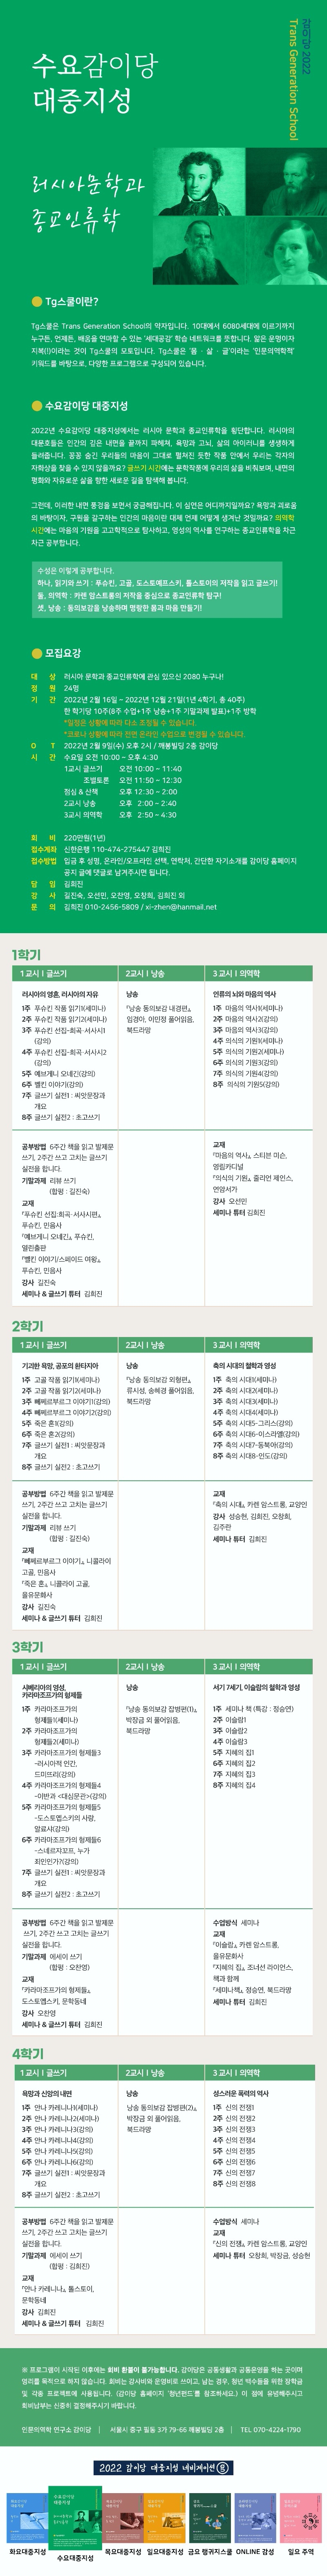 2022감이당 웹자보_수요_수정_온오프 설명 추가(2022.02.05).jpg